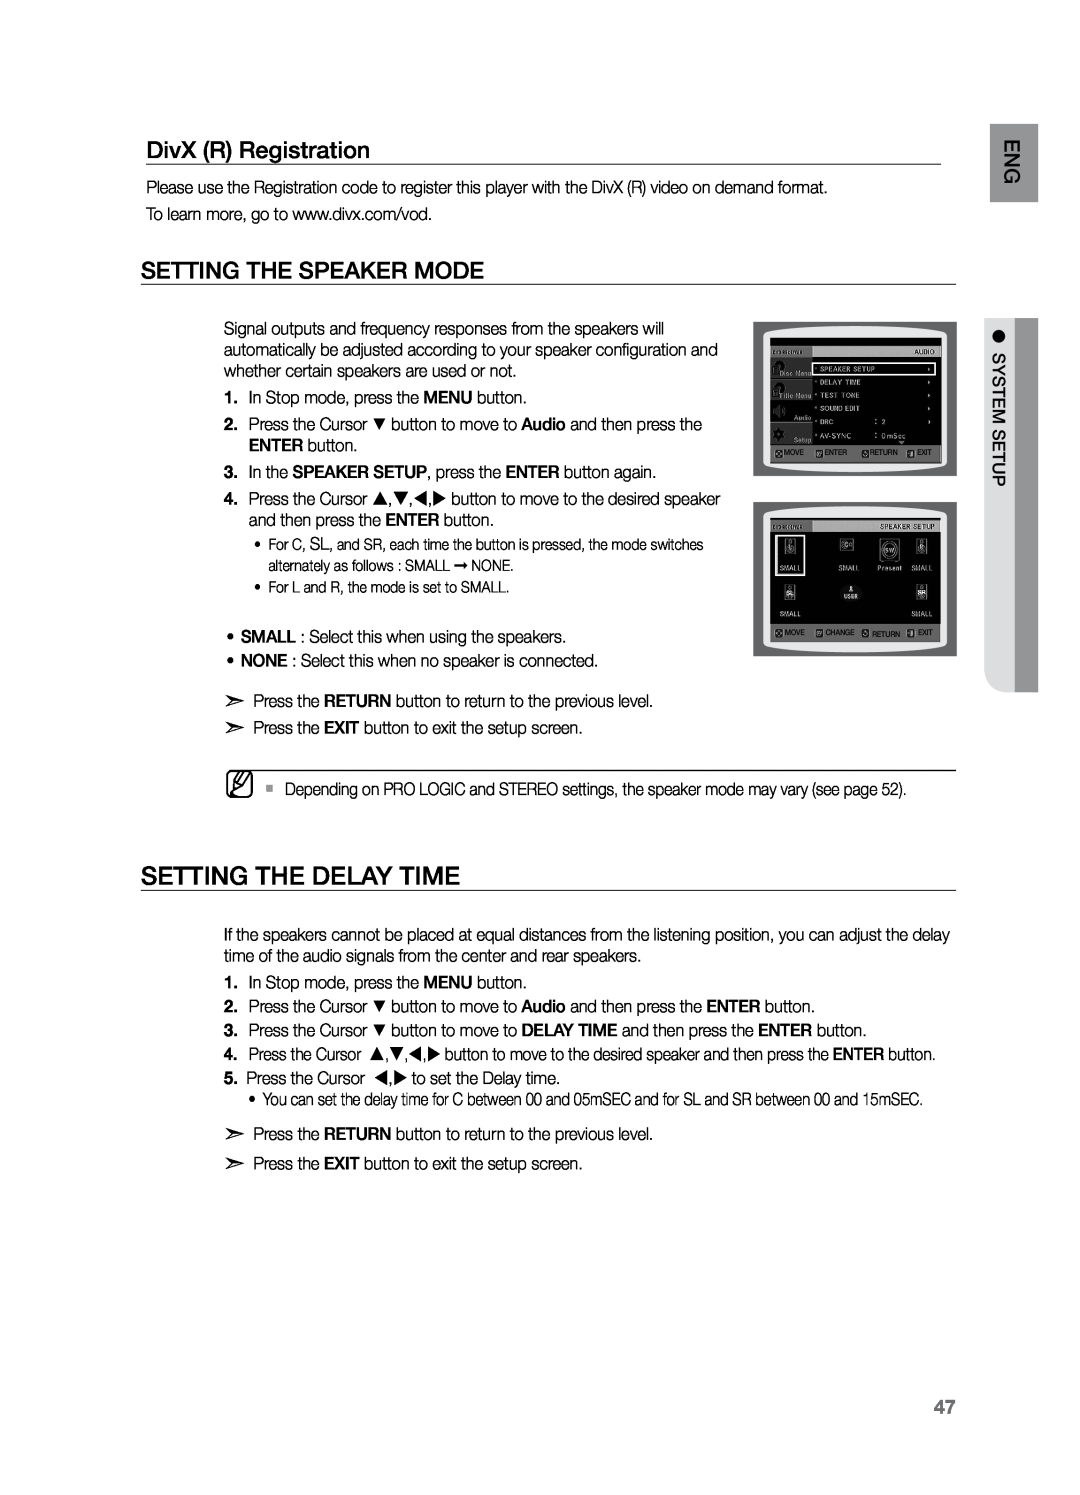 Samsung HT-Z221 user manual Setting the Delay Time, DivX R Registration, Setting the Speaker Mode 